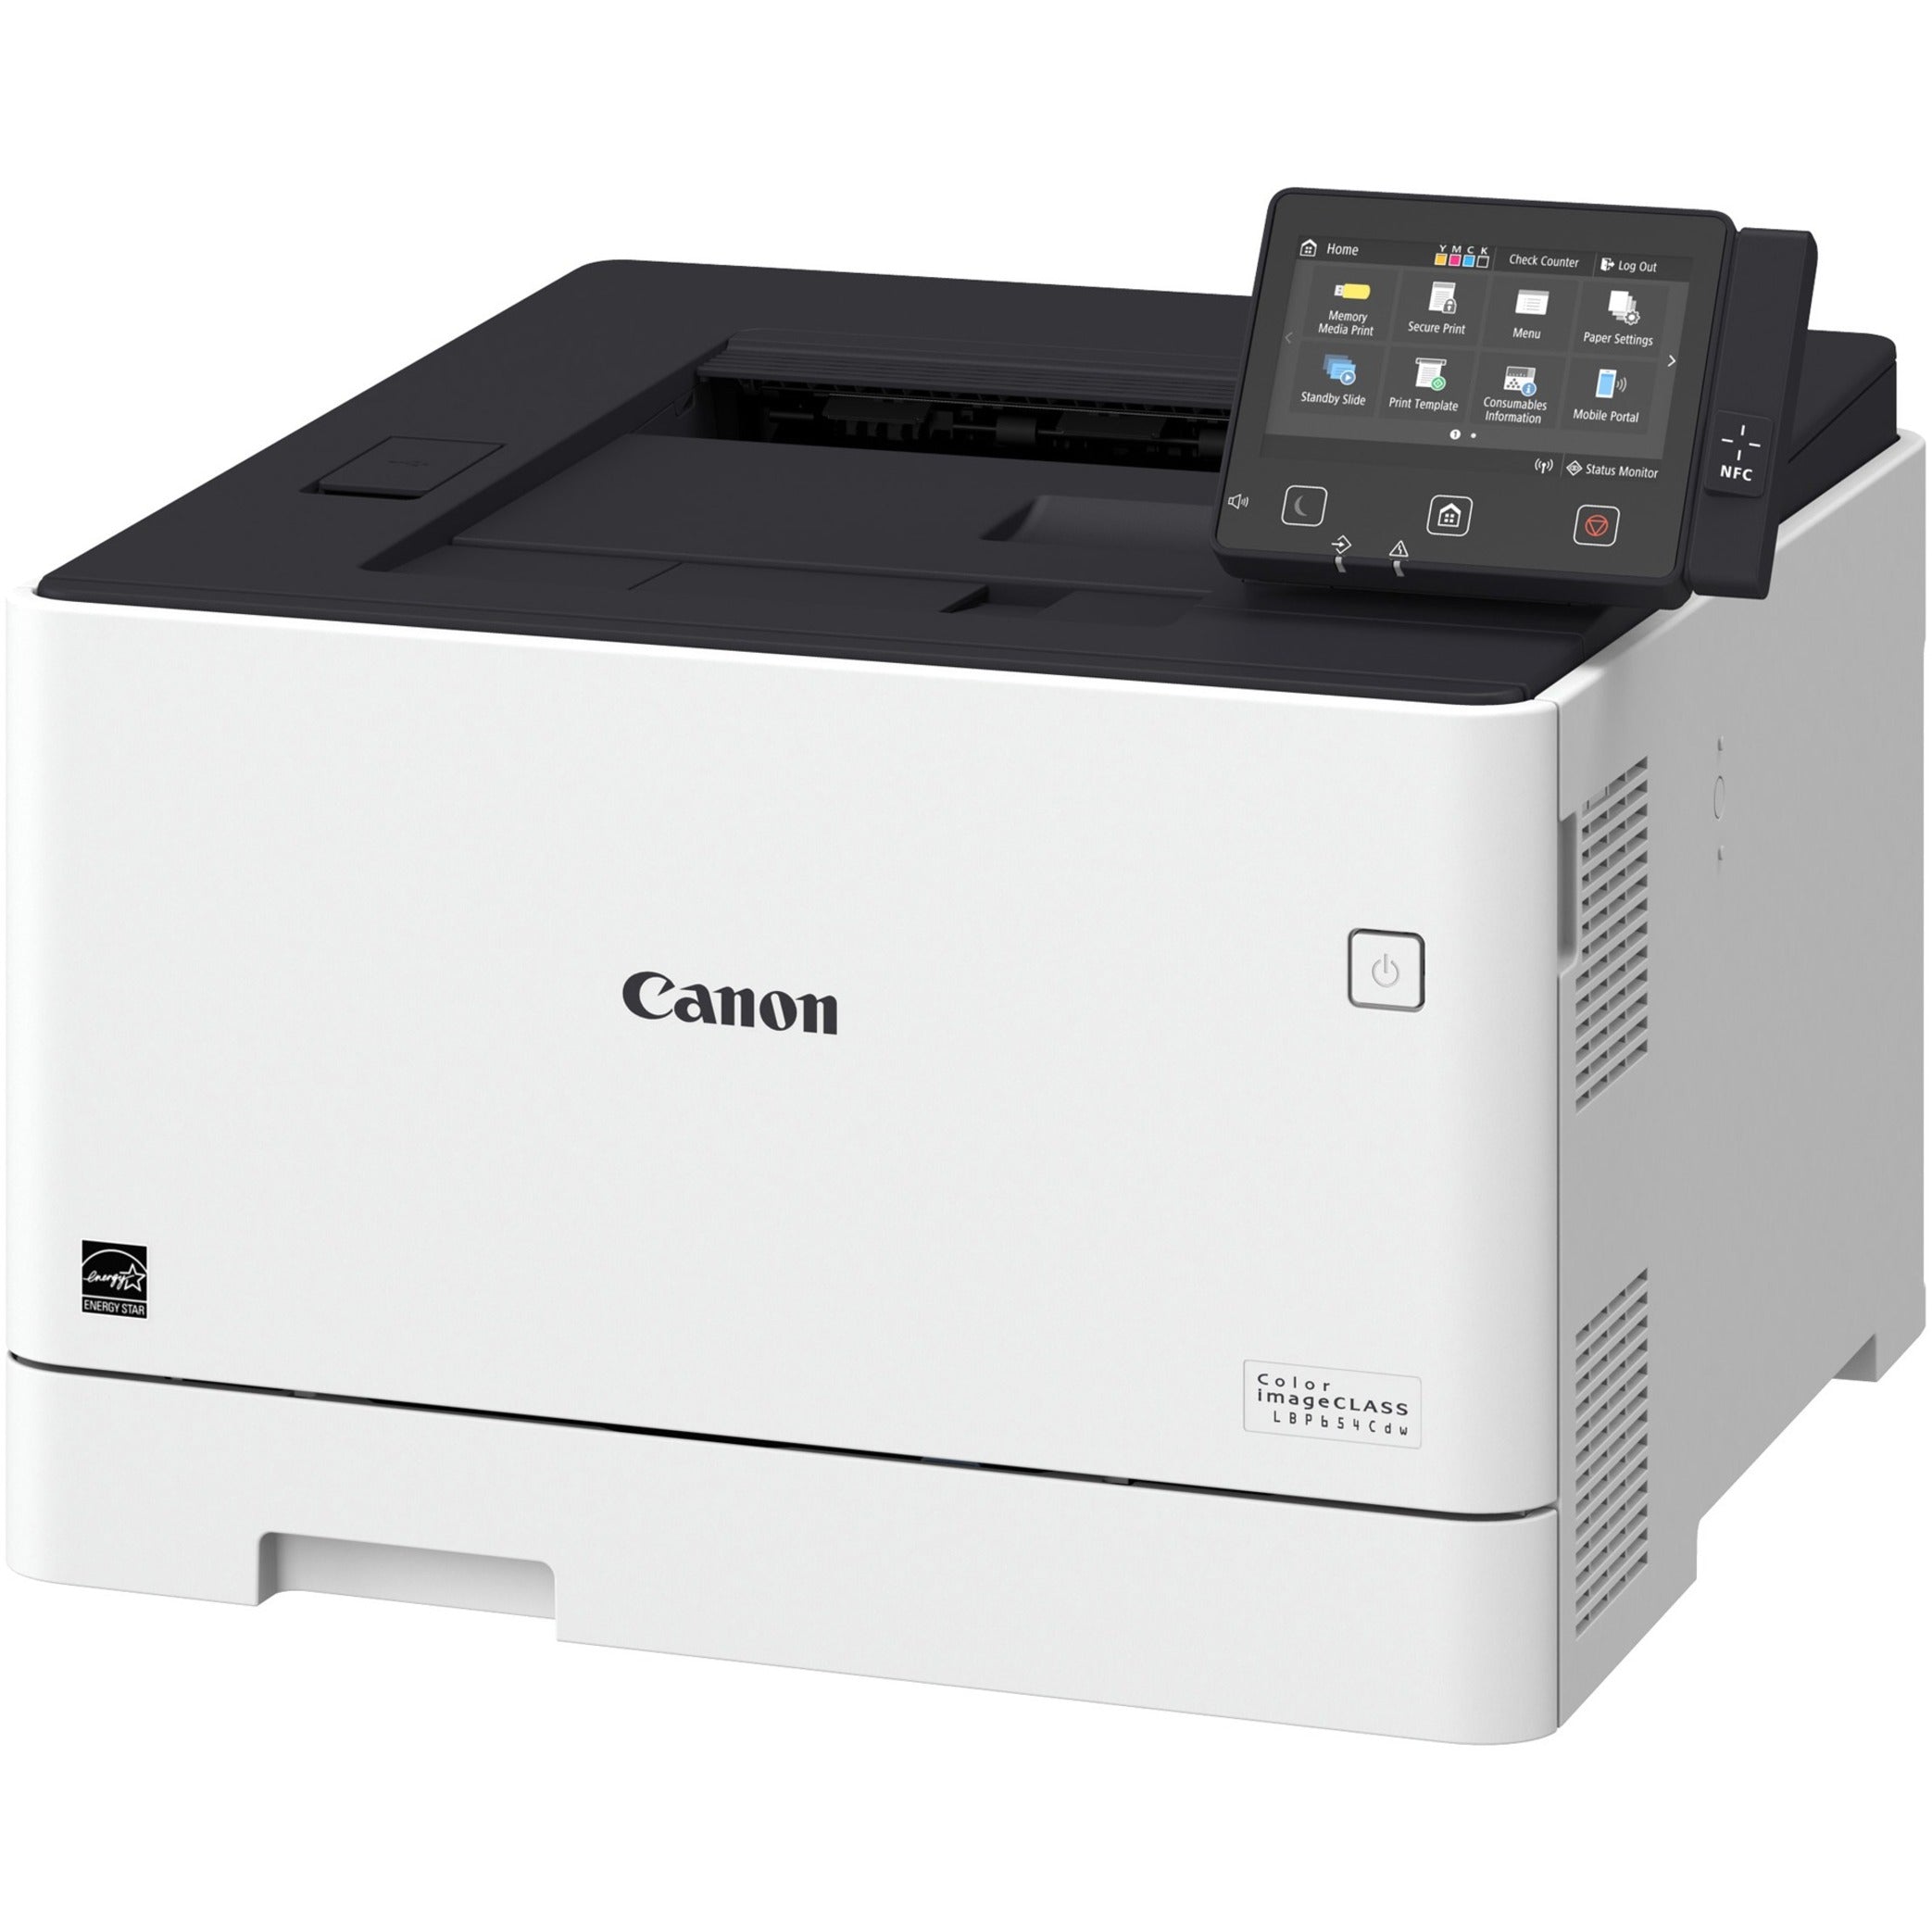 Canon 1476C004 imageCLASS LBP654Cdw Laser Printer, Color, Wireless, Duplex, 28 ppm